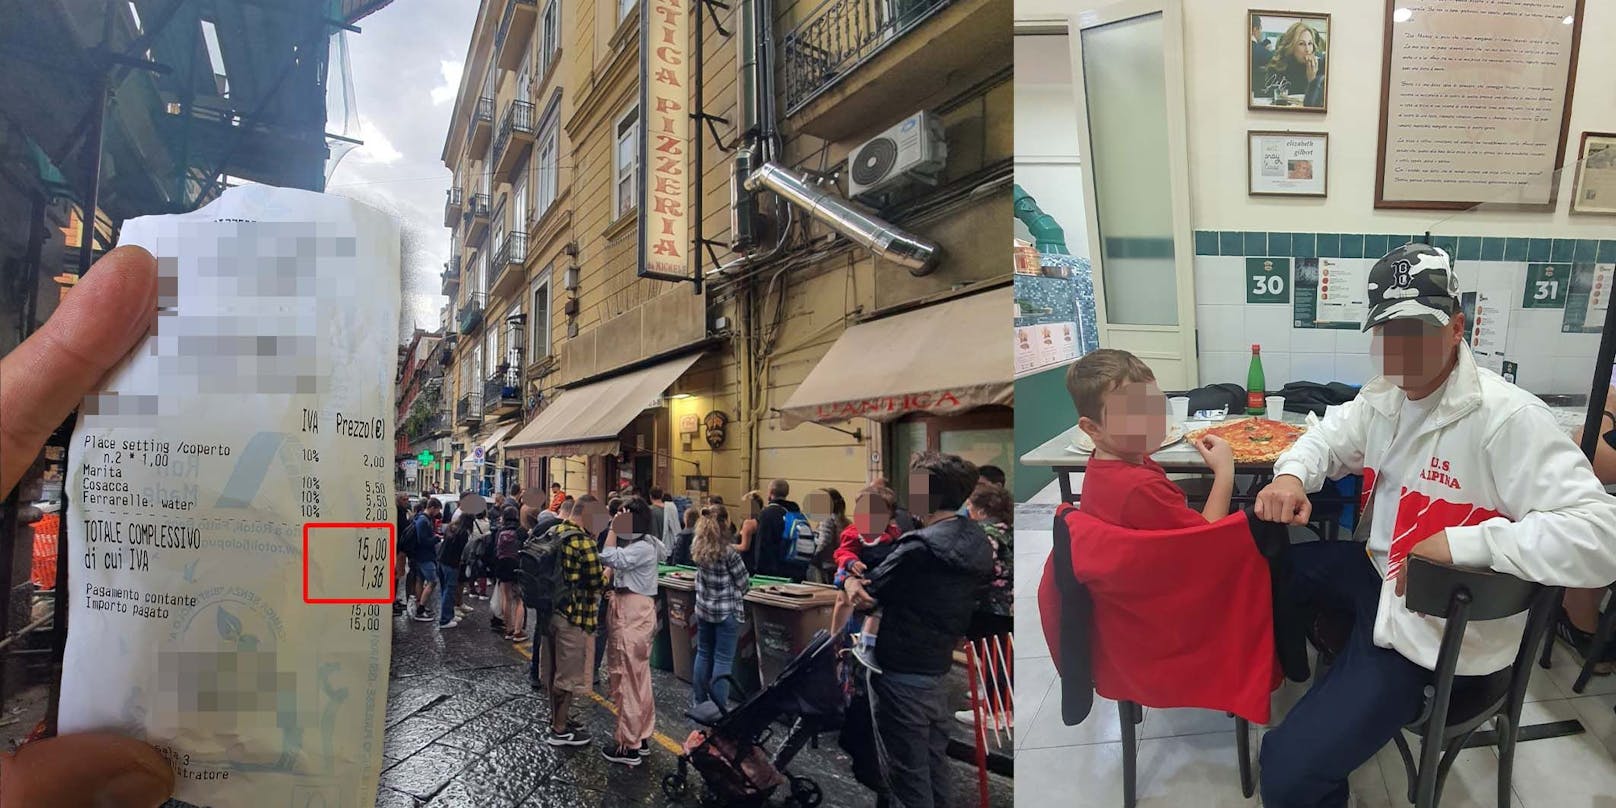 Wiener sprachlos über Pizza-Preise im Italien Urlaub